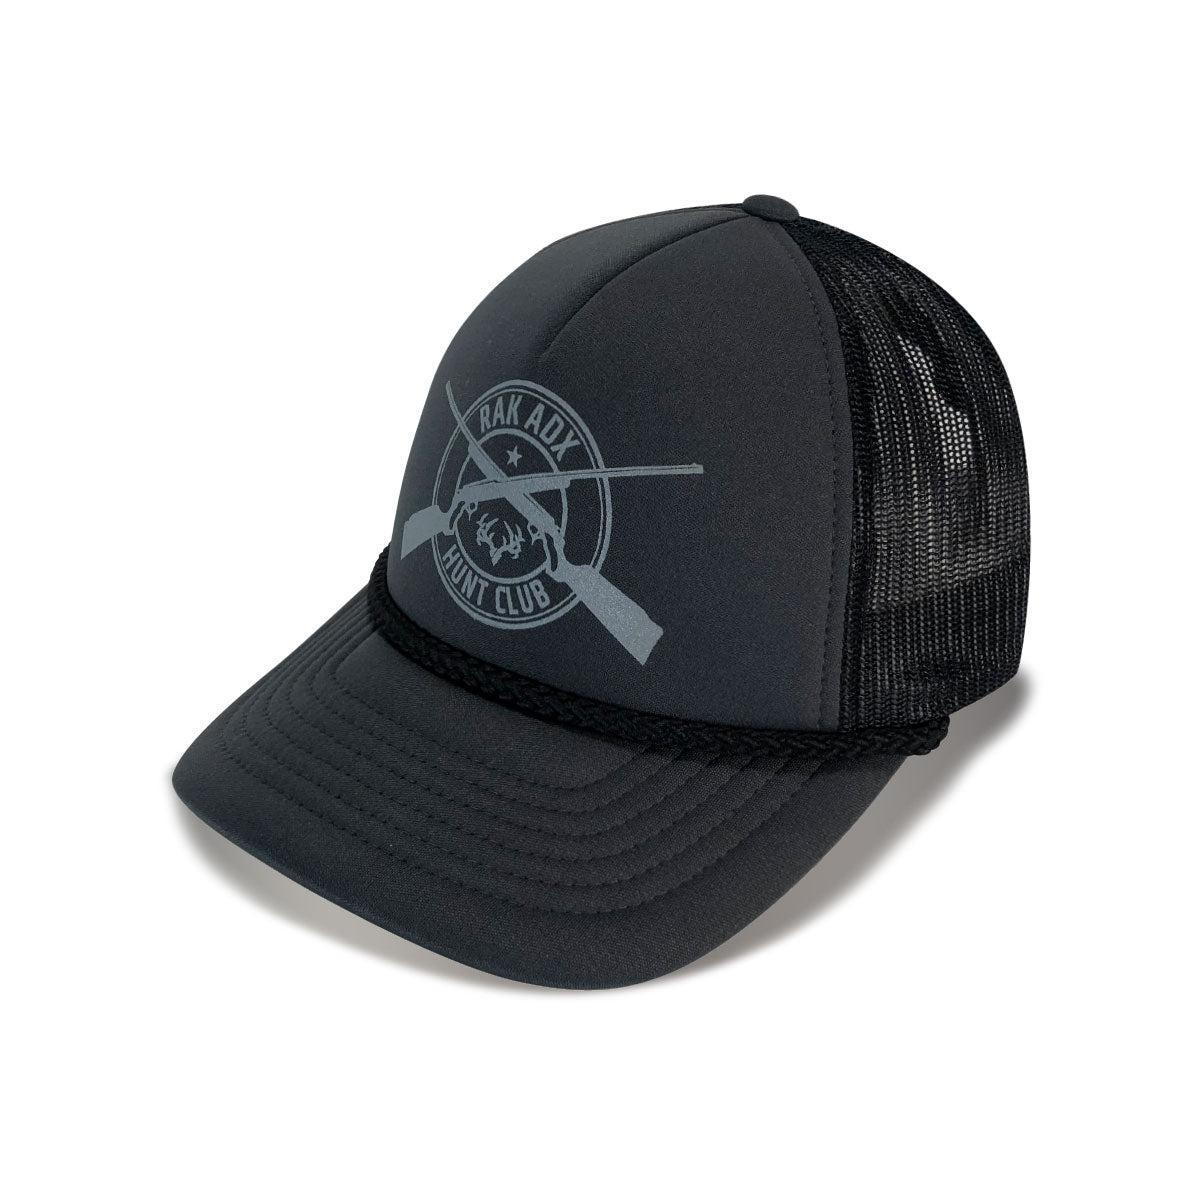 Hunt Club Foamie Trucker Hat - Clearance